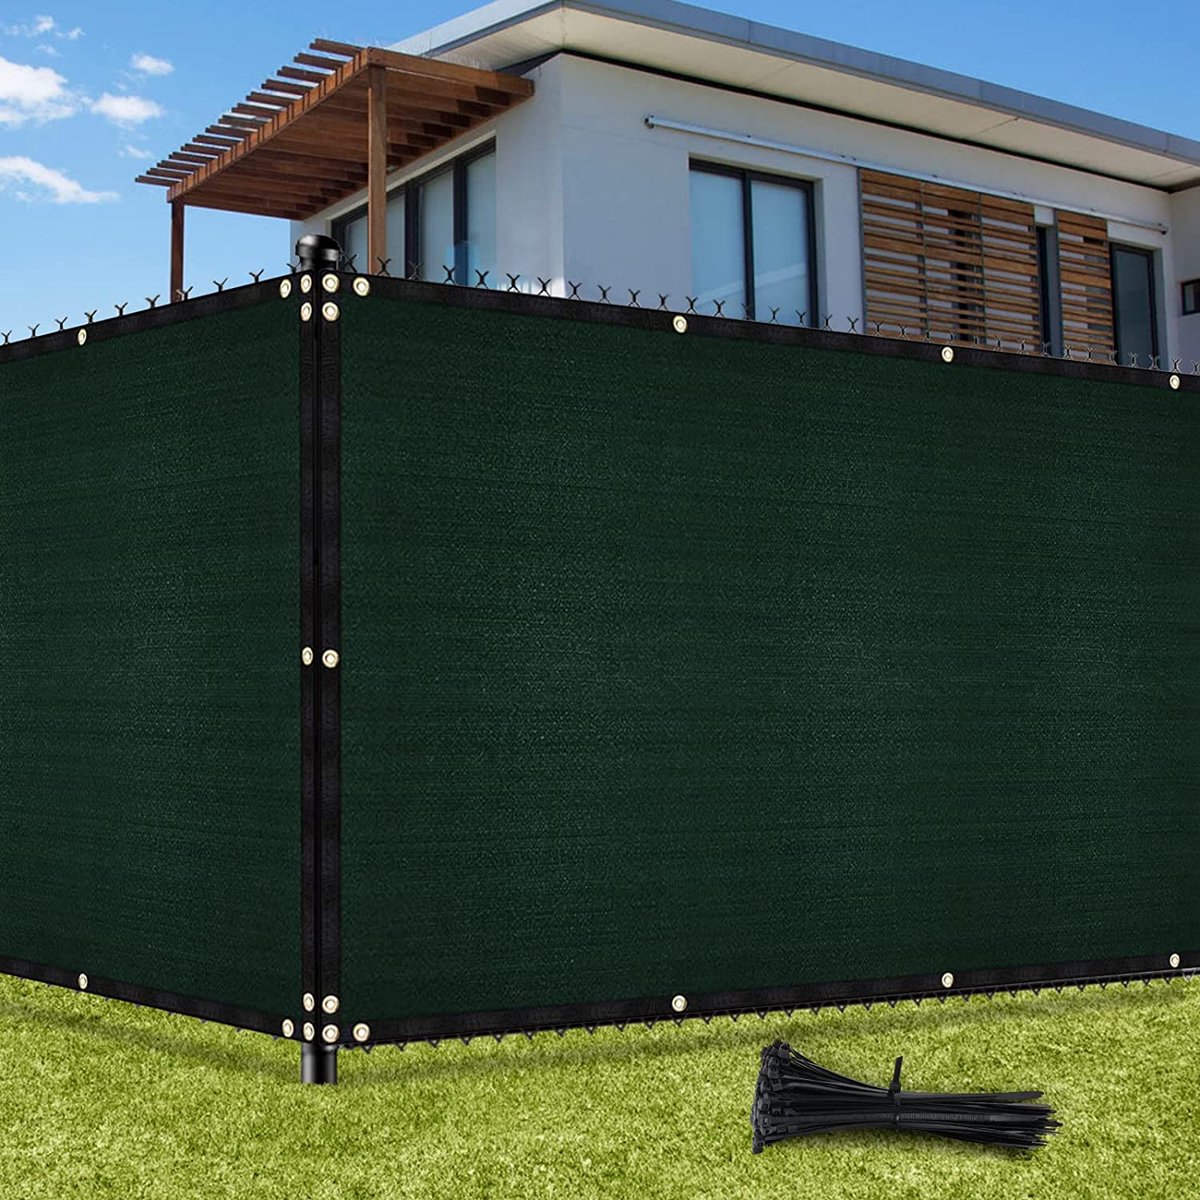 Inkijkbescherming hek 1,22m x 15,24m, omheining schaduwnet met oogjes 142 g/m² blokkade UV-bescherming windscherm HDPE weefsel net met kabelbinders voor tuinhek, broeikas (Groen)